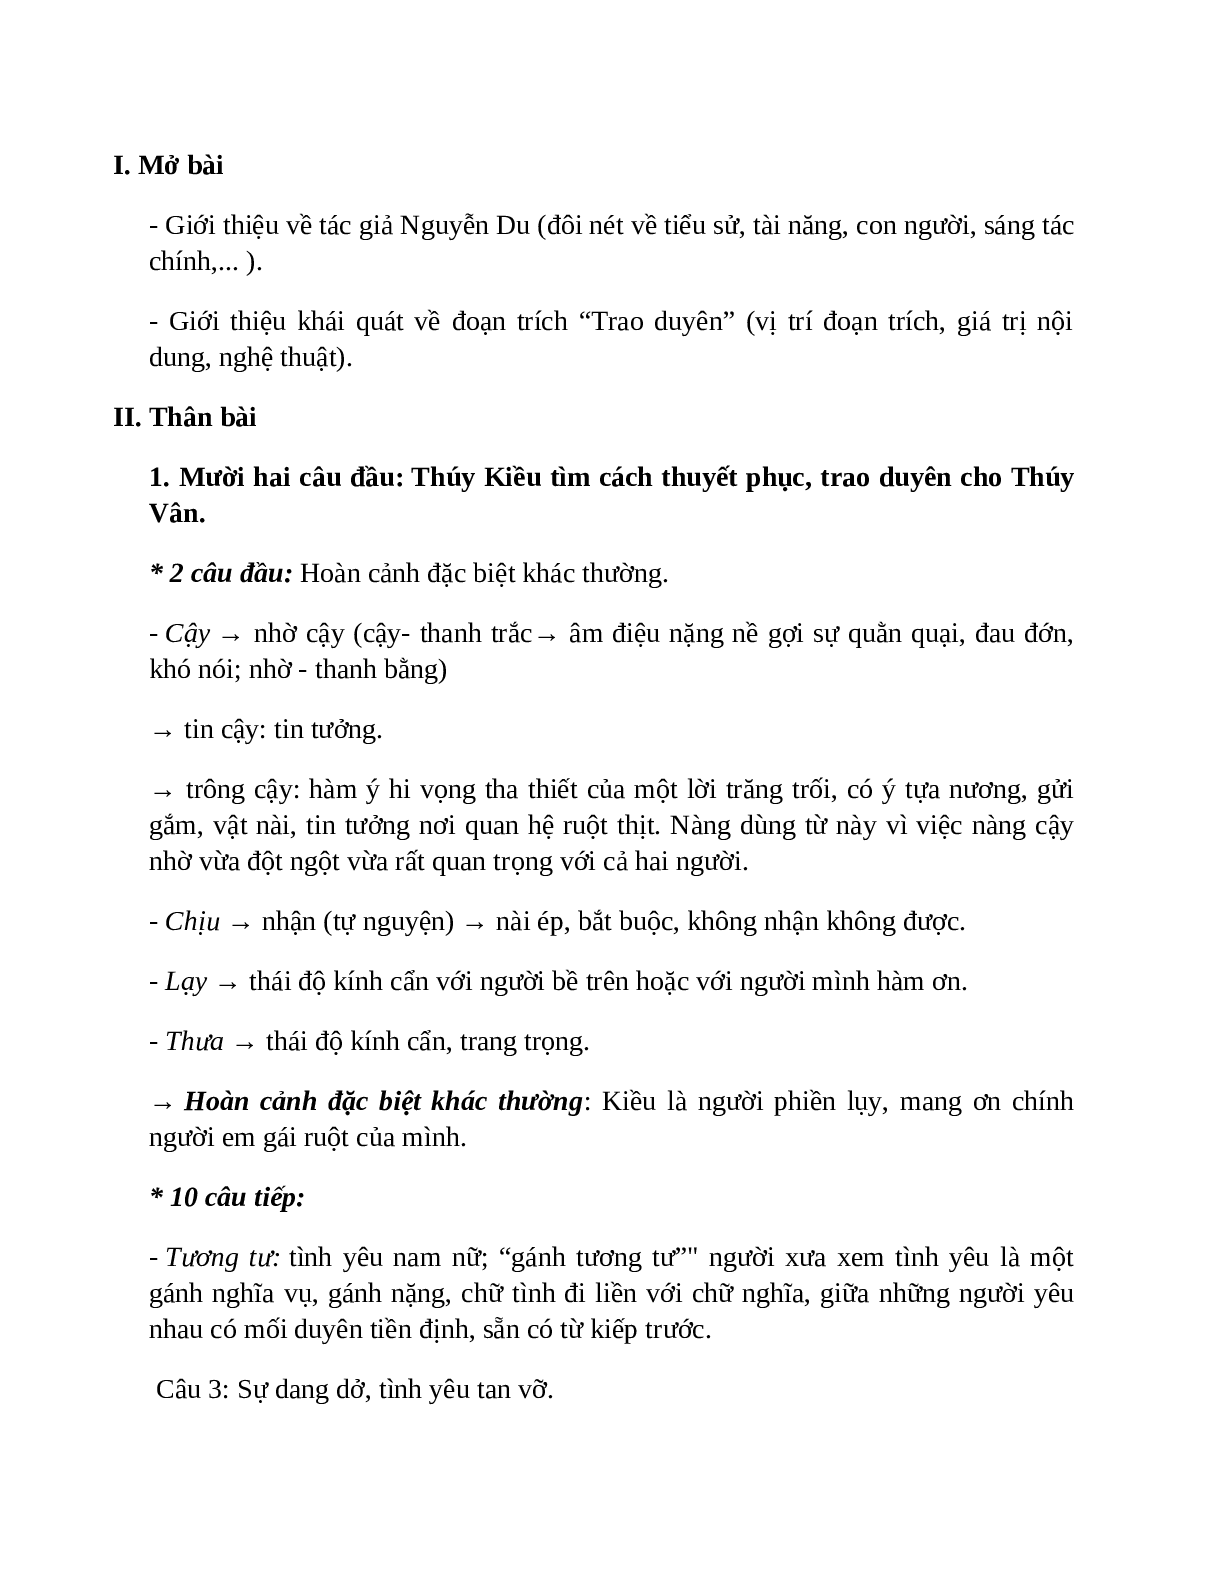 Sơ đồ tư duy bài Trao duyên dễ nhớ, ngắn nhất - Ngữ văn lớp 10 (trang 3)